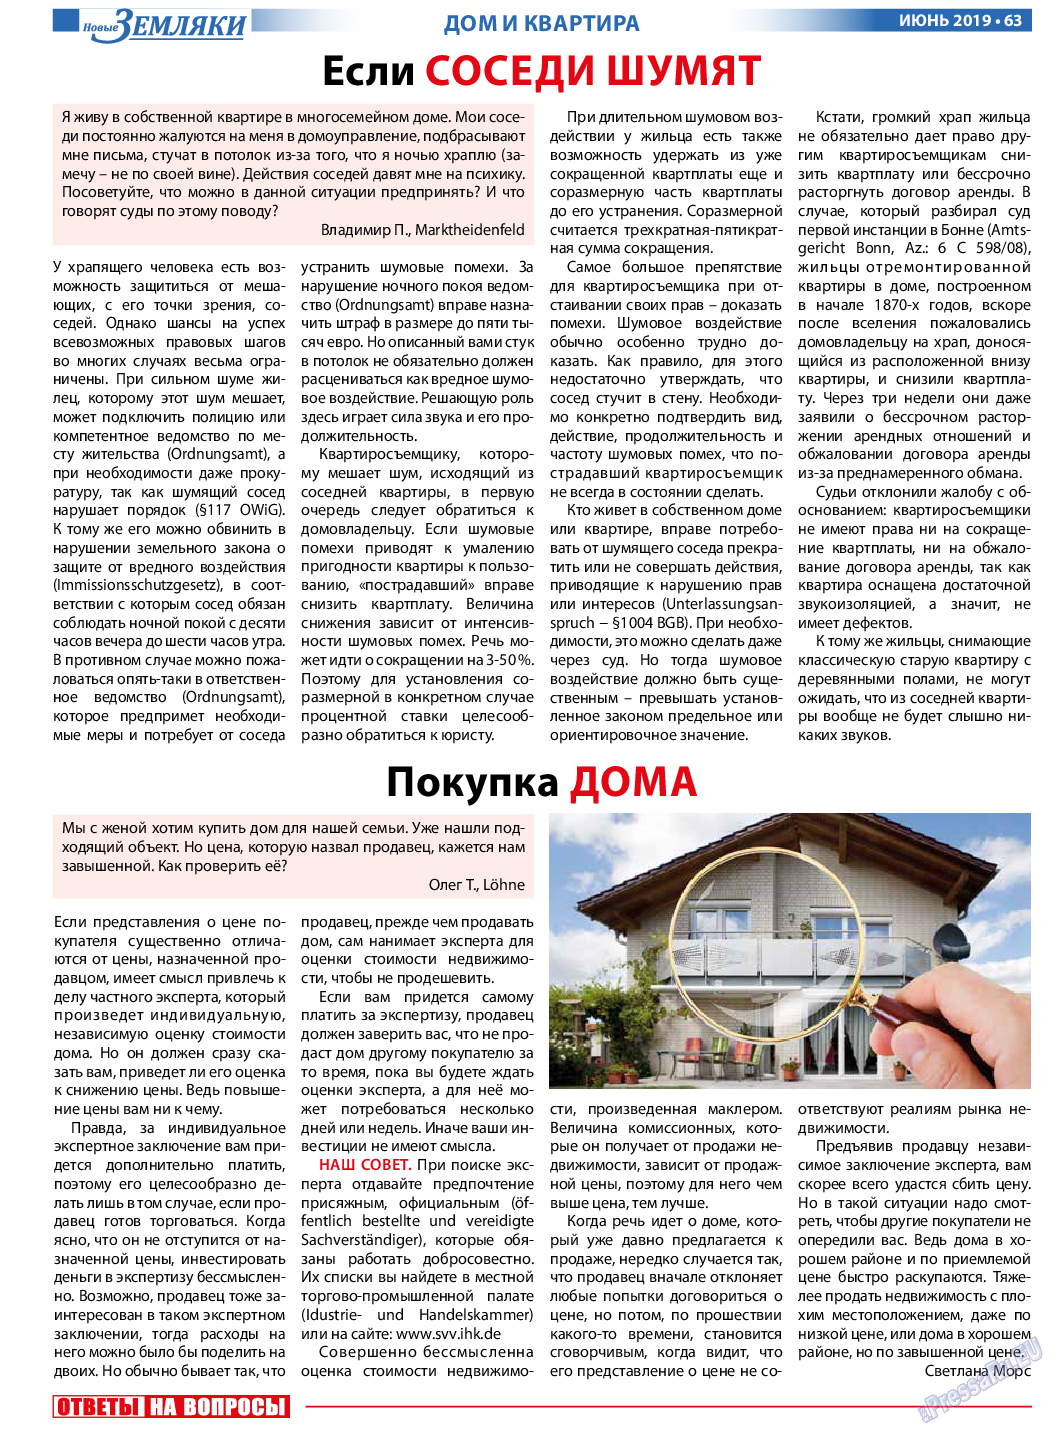 Новые Земляки, газета. 2019 №6 стр.63